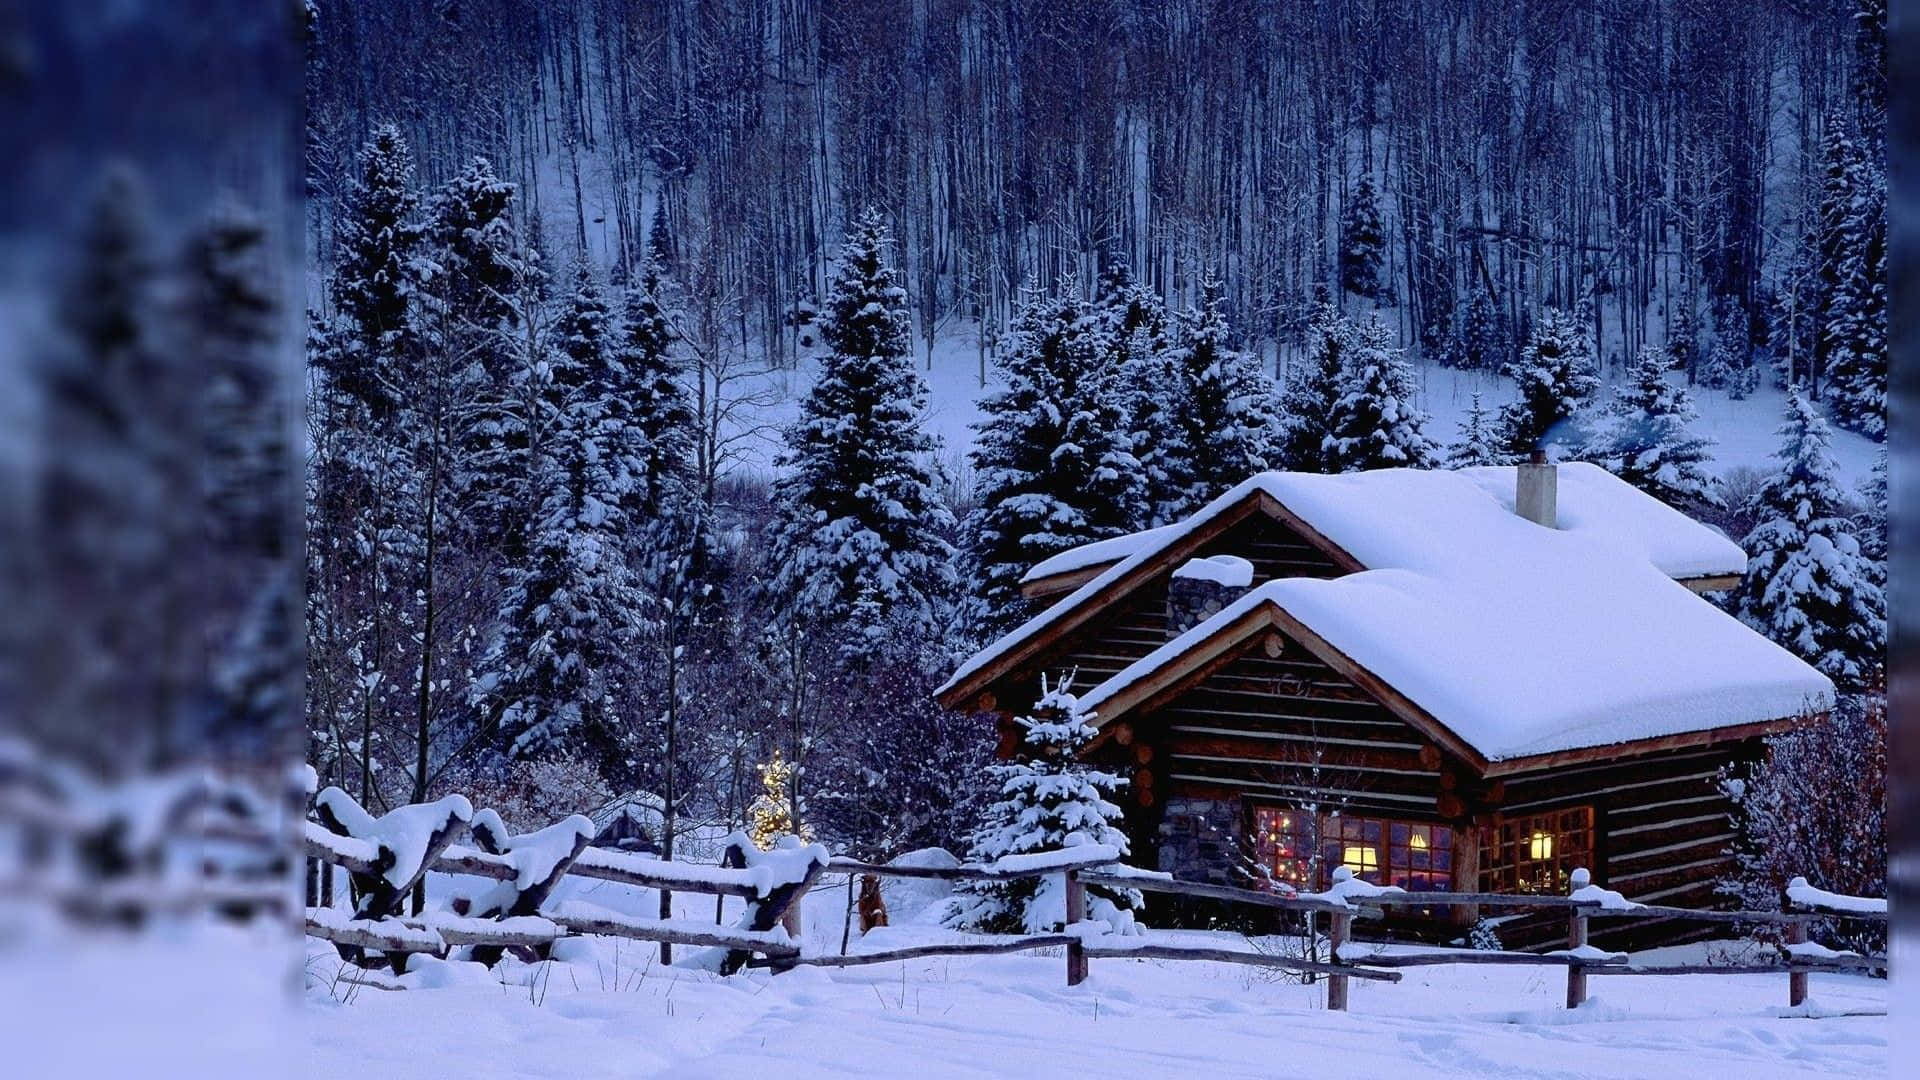 A Scenic Winter View